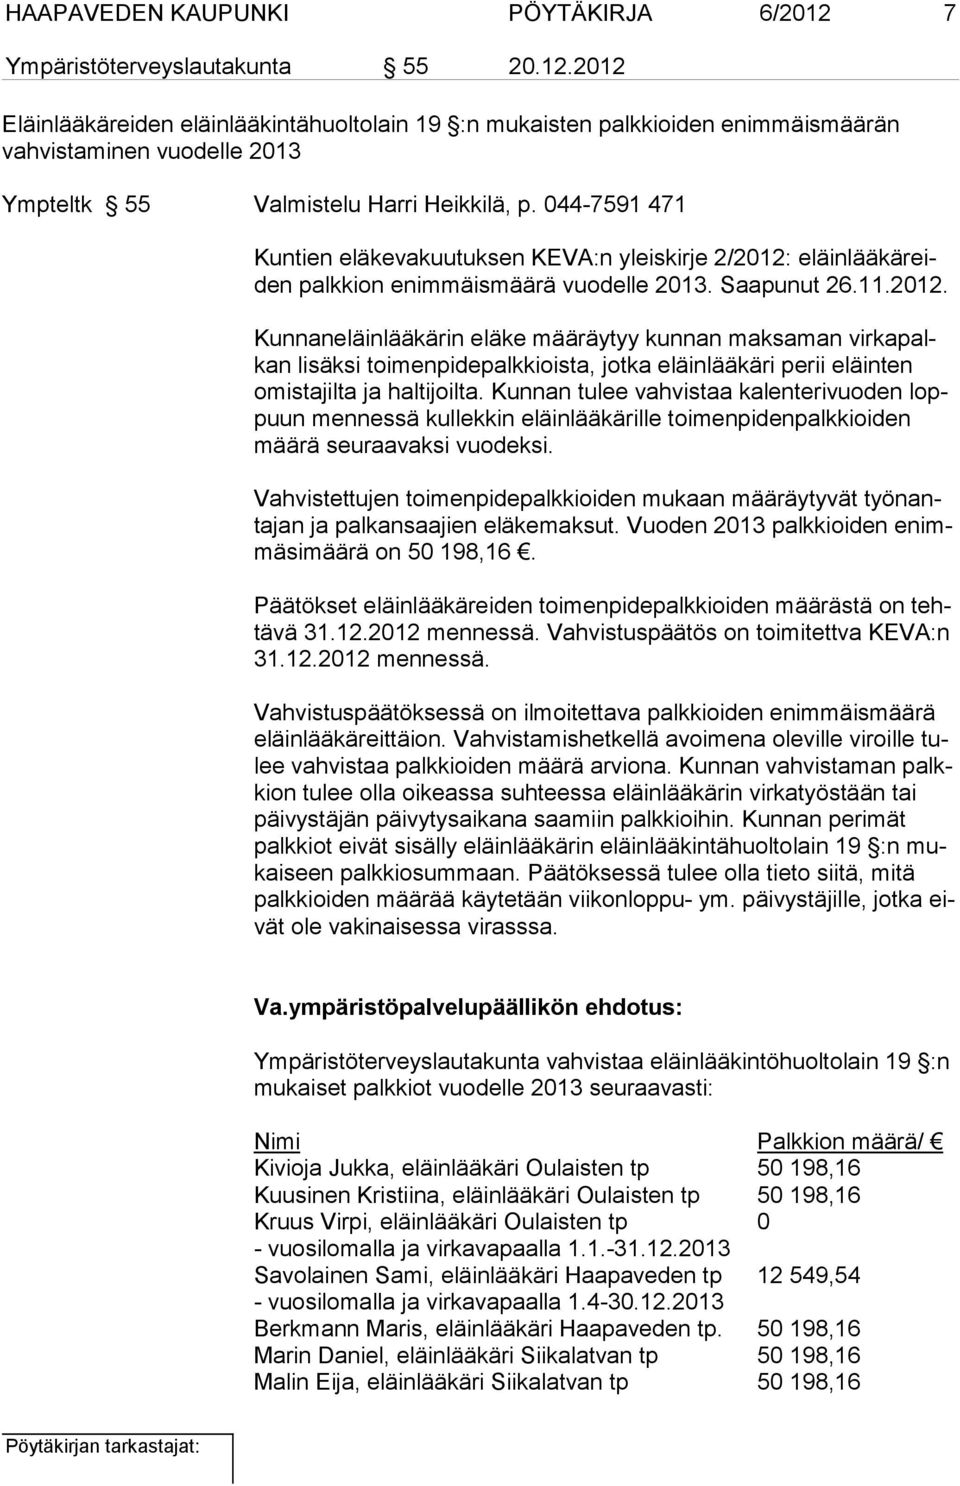 eläinlääkäreiden palkkion enimmäismäärä vuodelle 2013. Saapunut 26.11.2012.